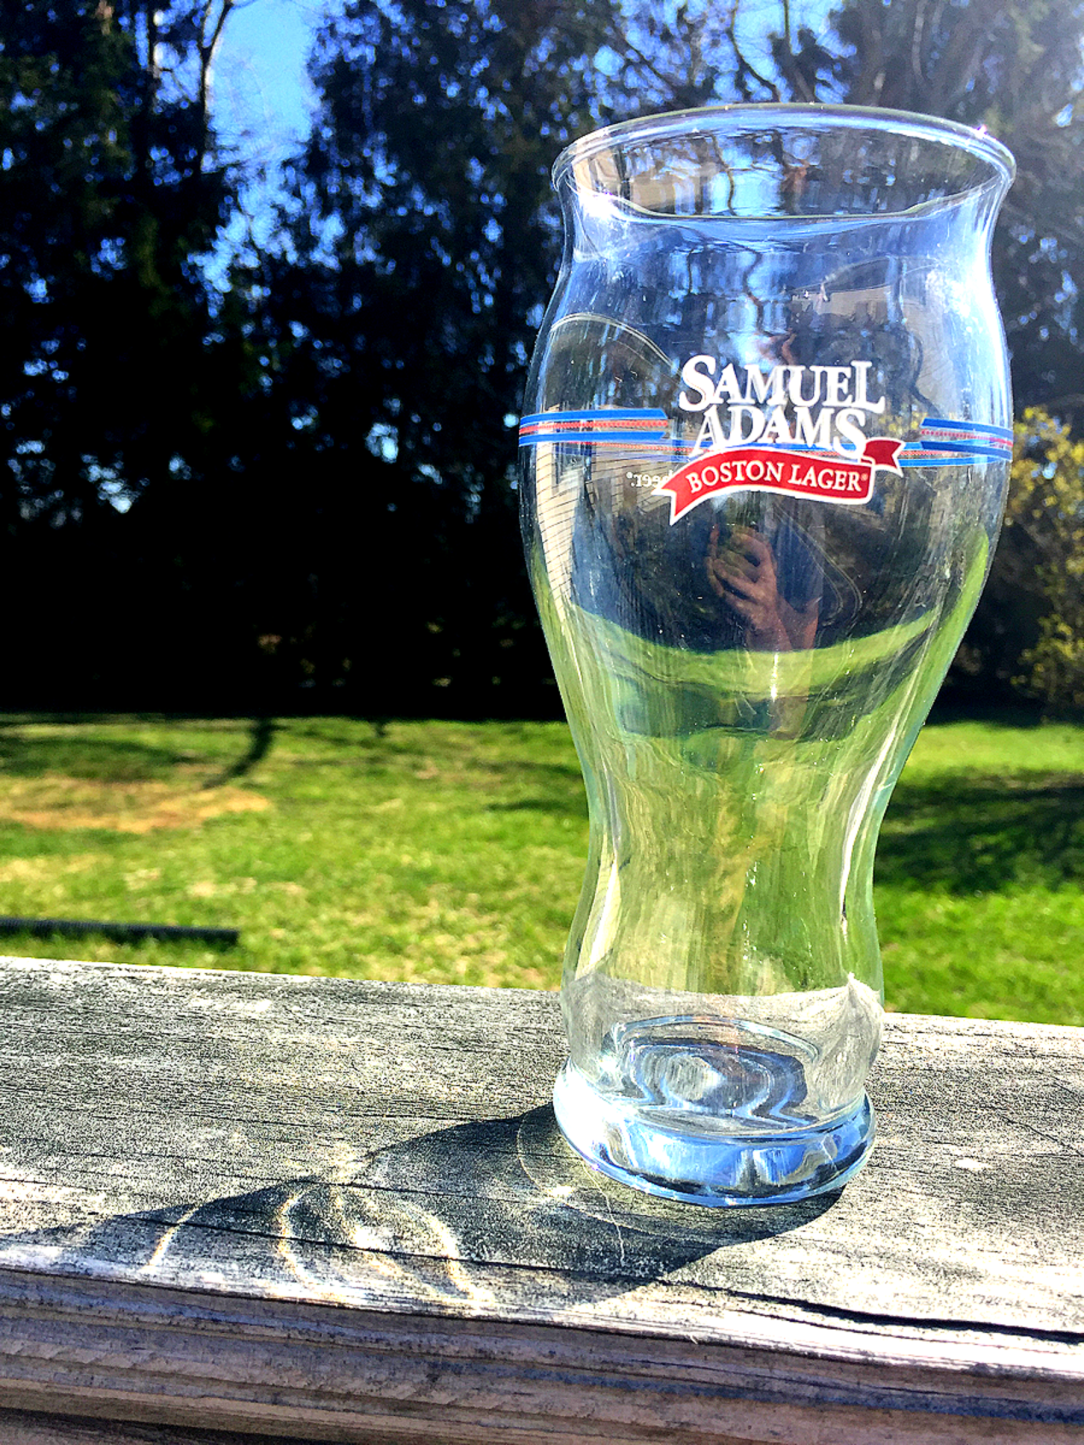 Samuel Adams craft beer glass